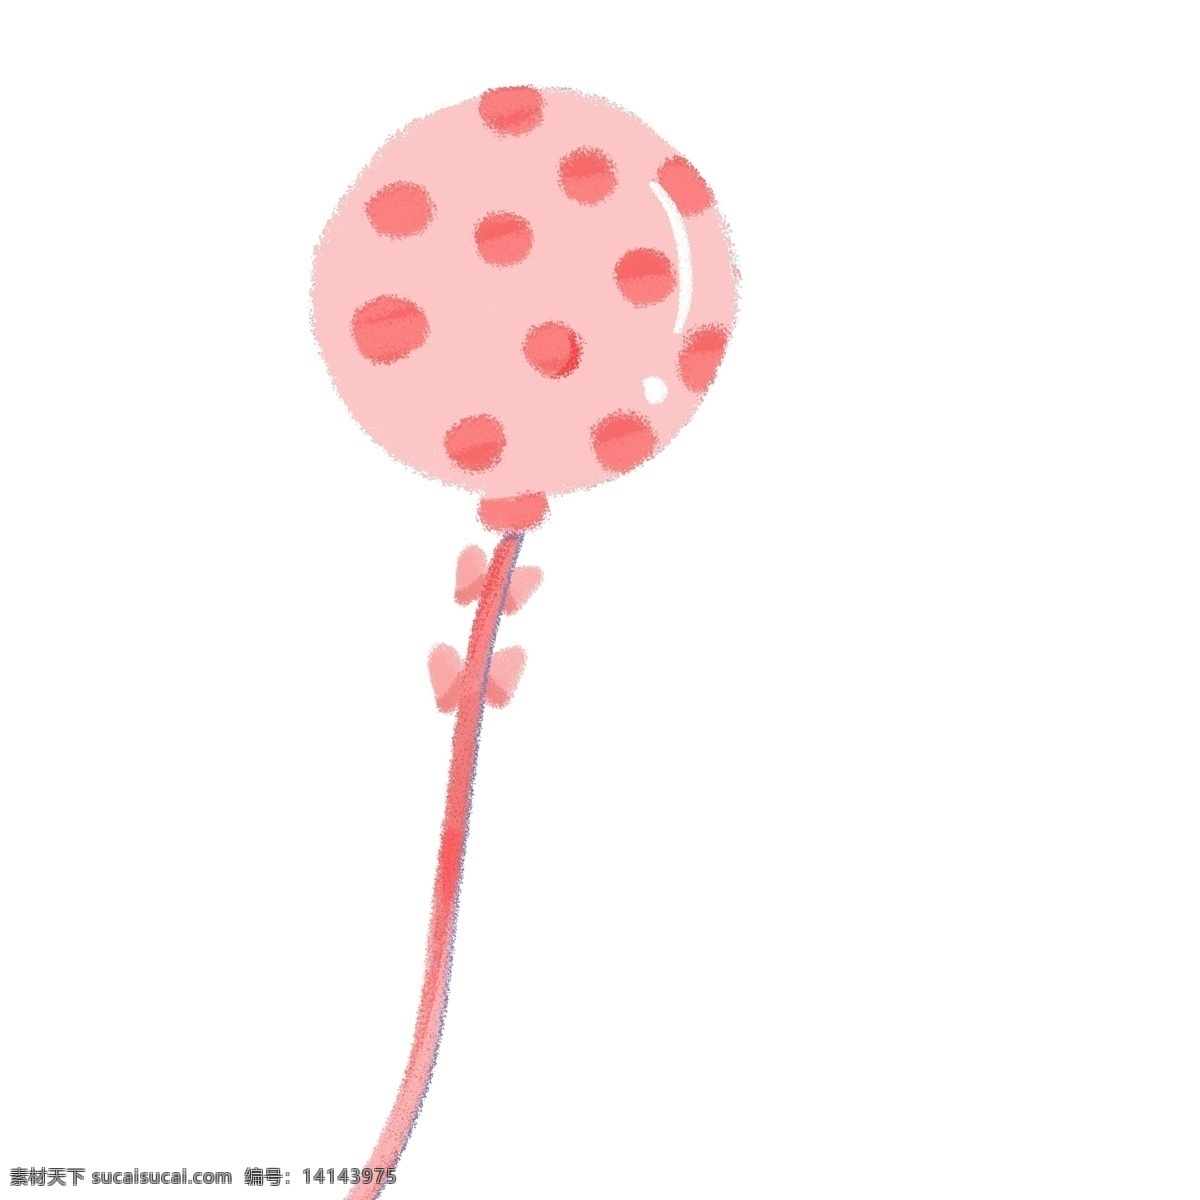 粉色斑点气球 粉色 斑点 气球 少女心 孩子 玩具